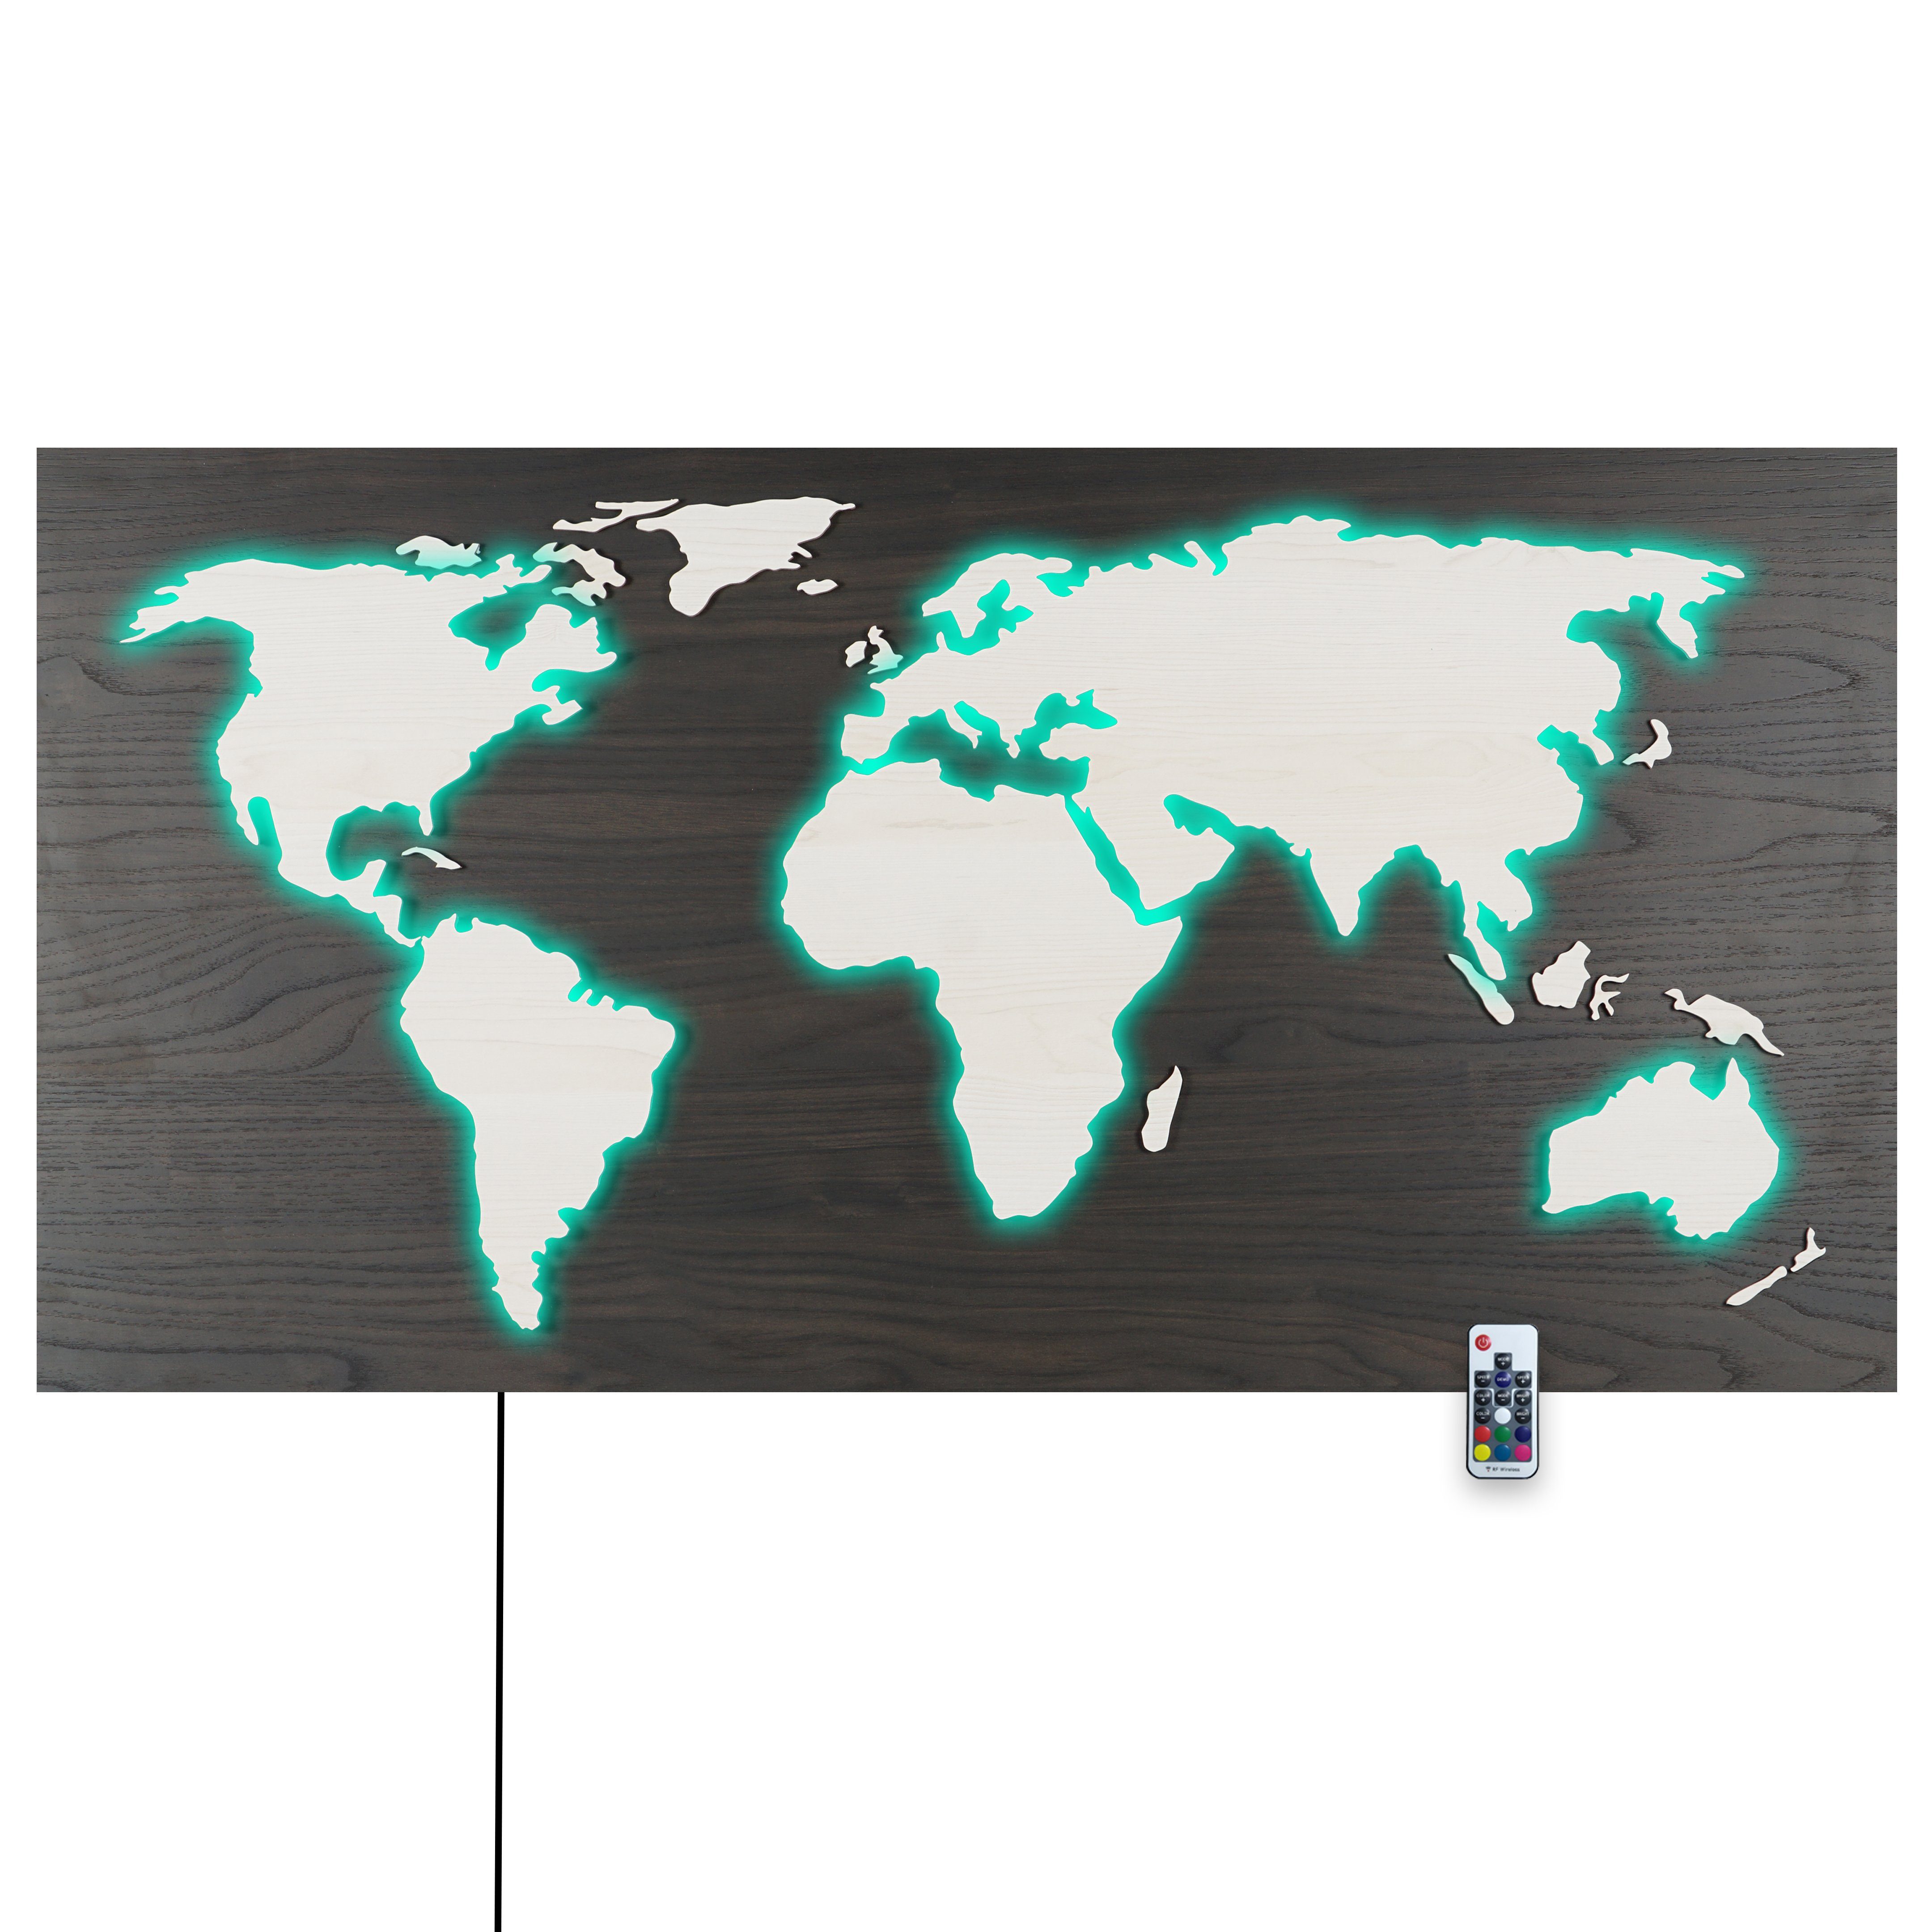 Schwarz, MAPPA über Rückplatte 3D-Lichtbild, RGB Kontinente Länder Rustikale - Wanddekoobjekt Ahorn HOLZ-Optik LEDs LUX ZENLED mit Walnuss Fernbedienung 110x57cm umleuchtet Weiss steuerbaren Deko Weltkarte bunt